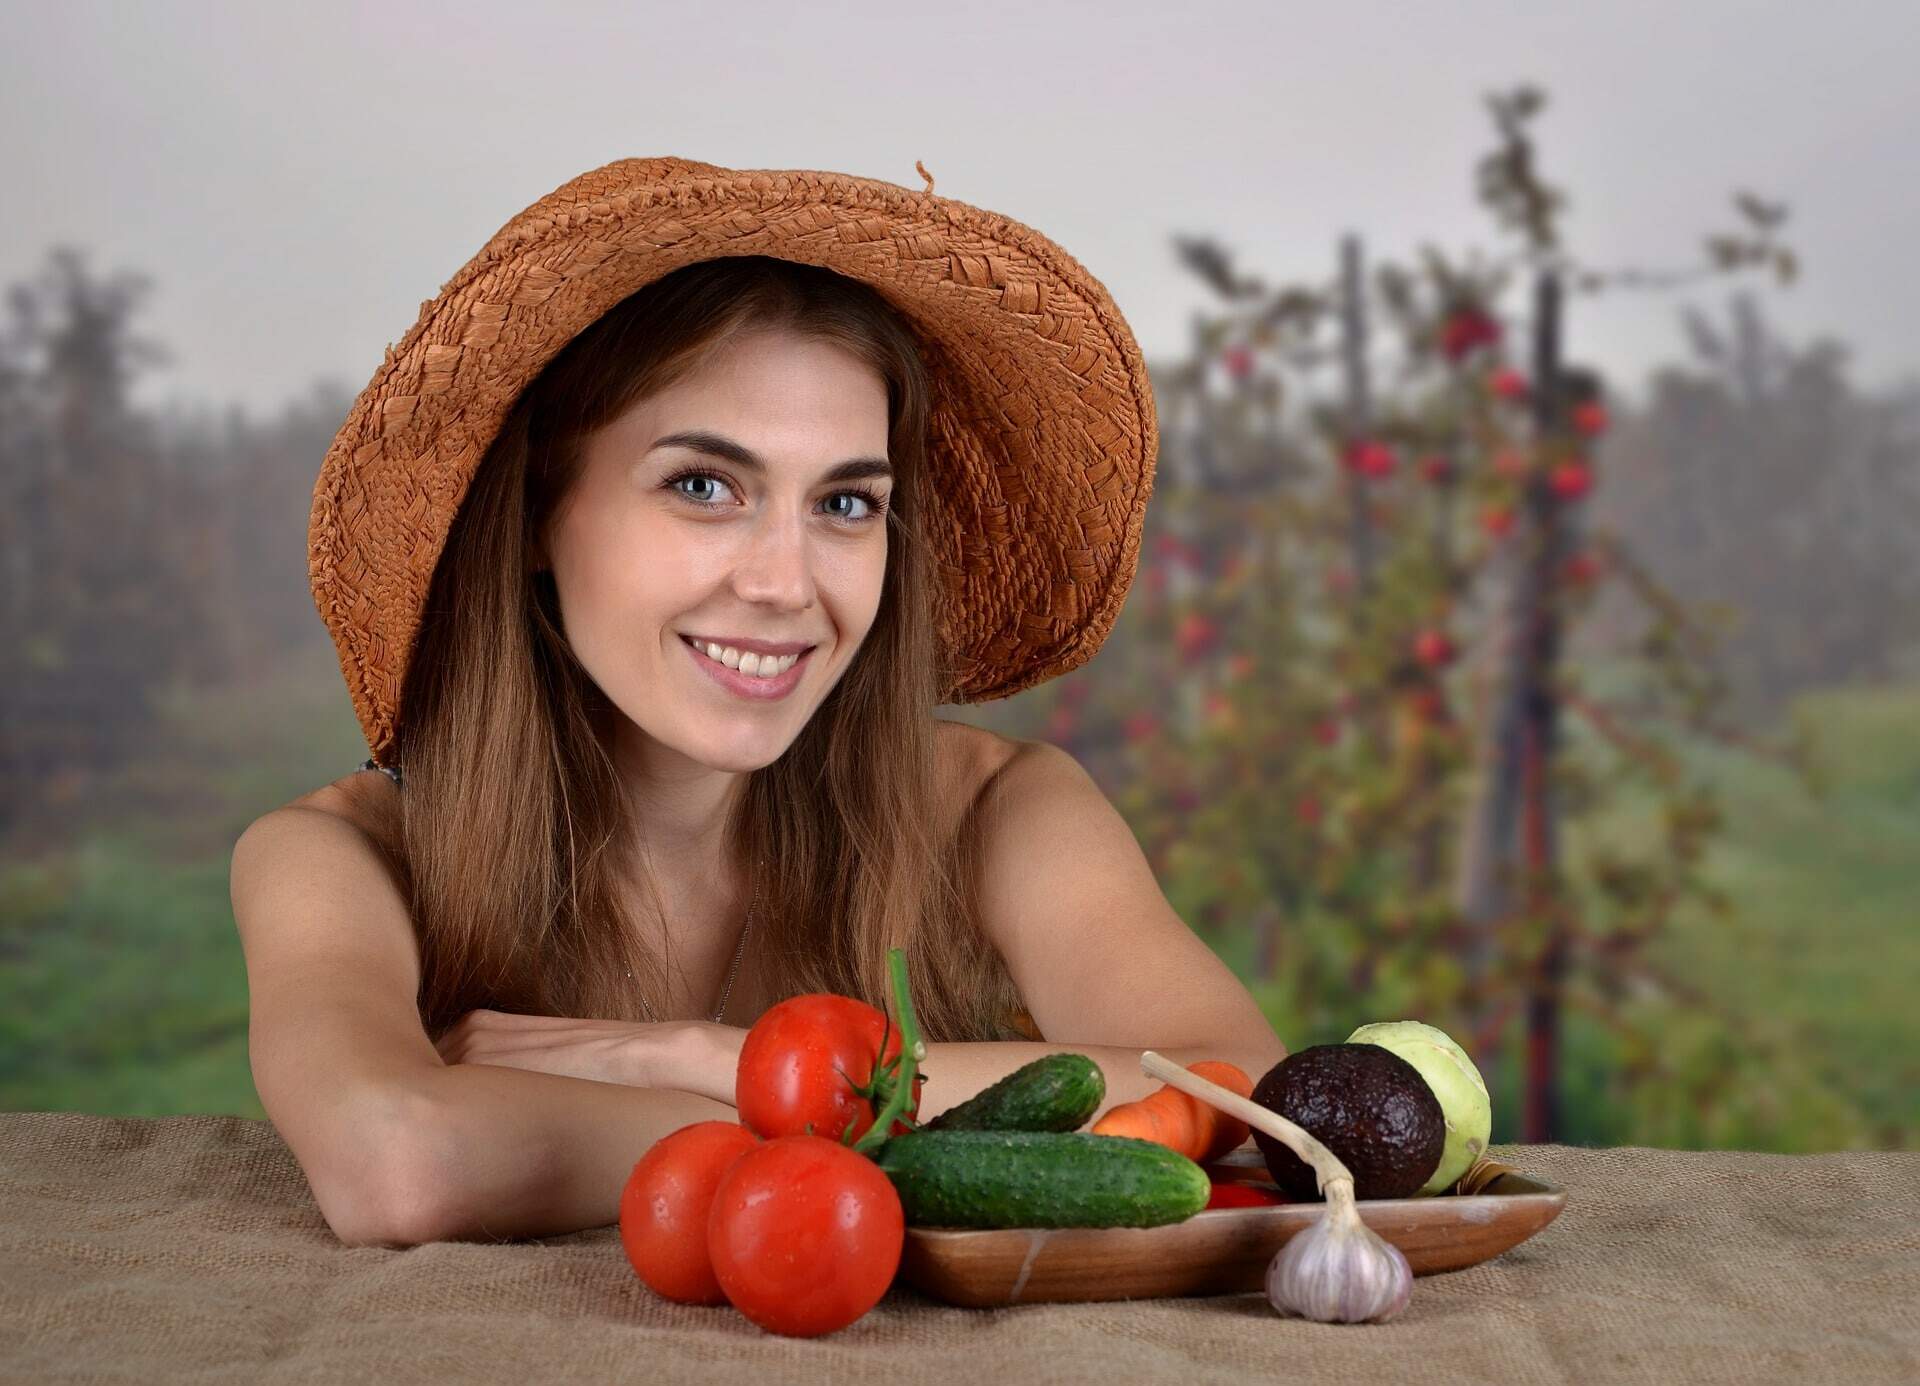 Баба натур. Девушка с помидорами. Красивая девушка с помидорами. Девушка с урожаем. Девушка с овощами.